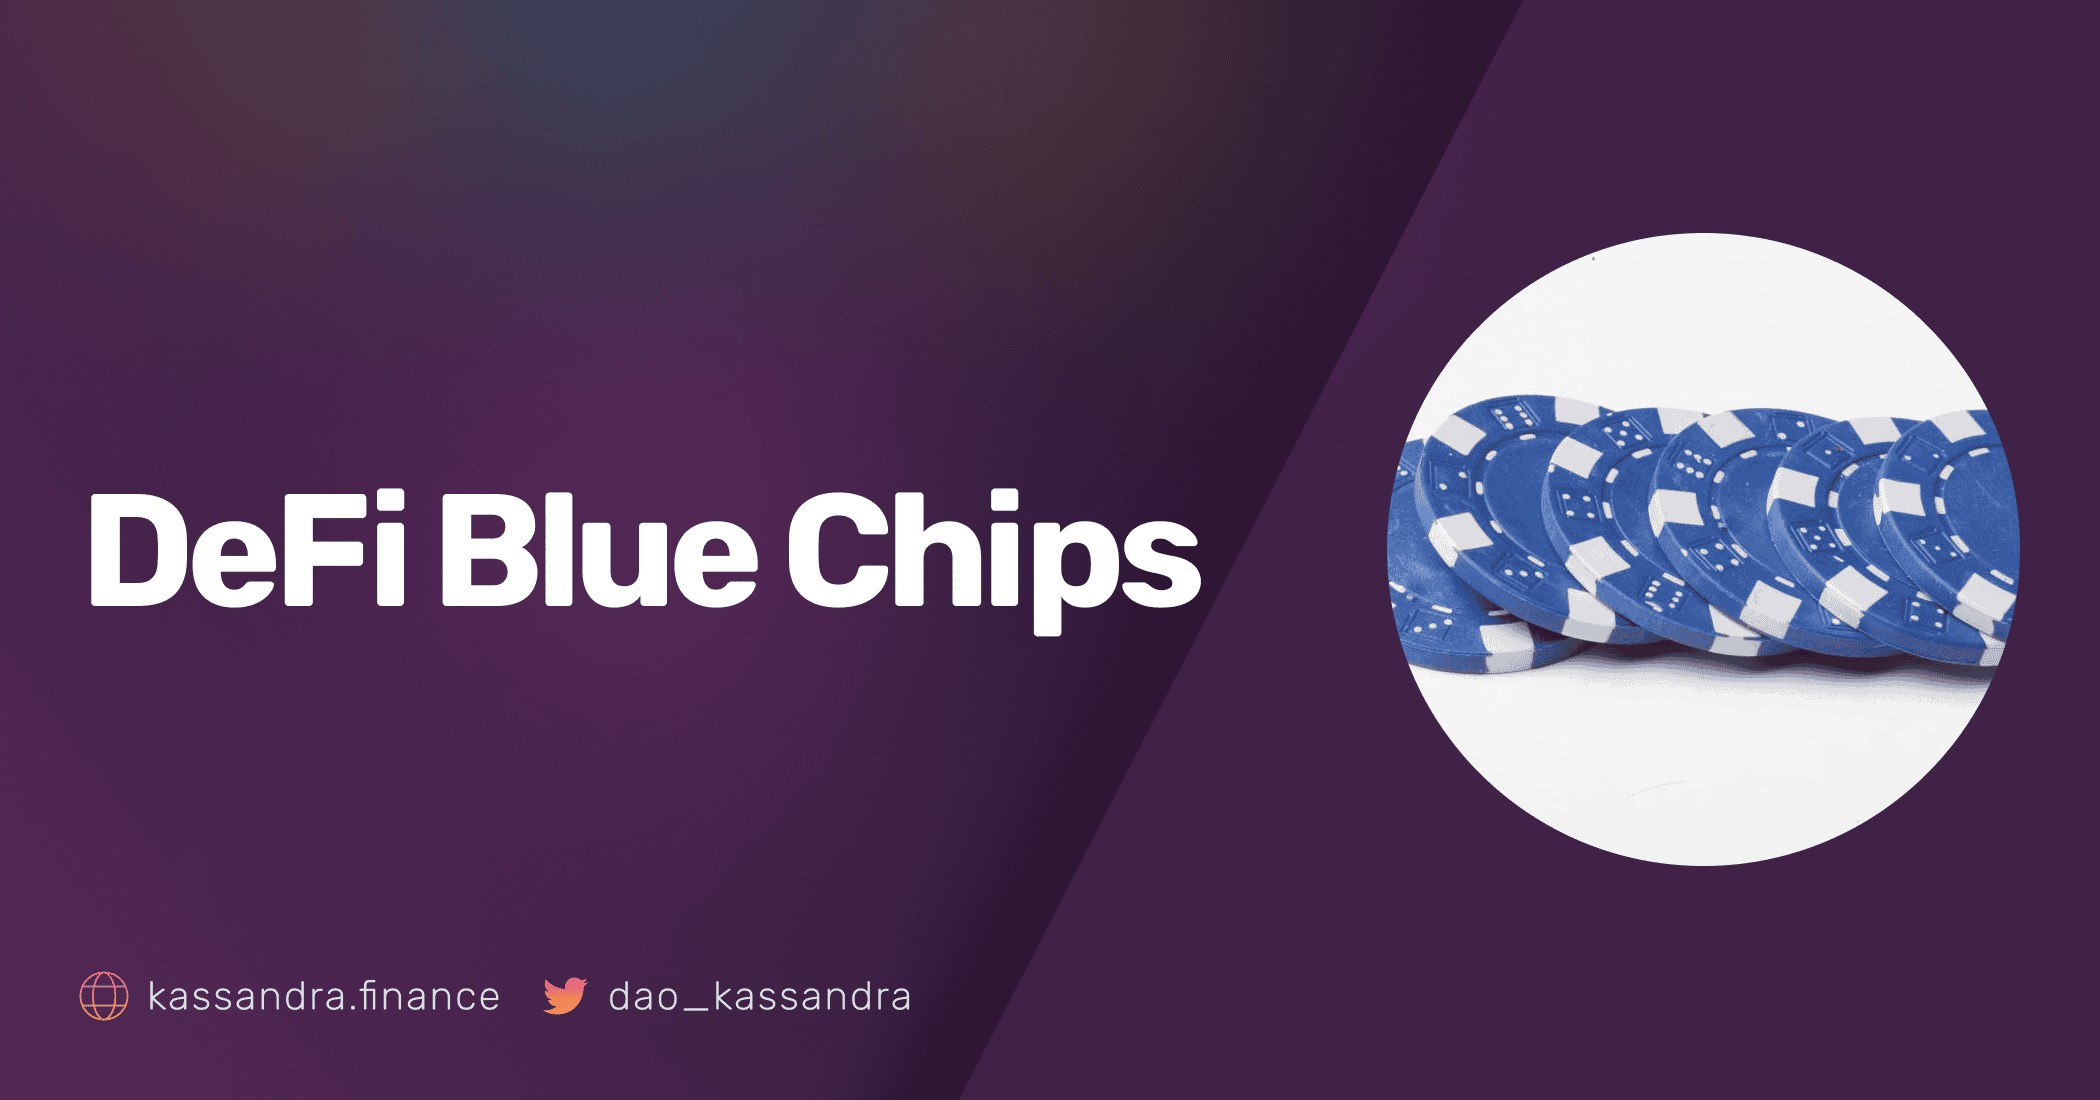 DeFi Blue Chips